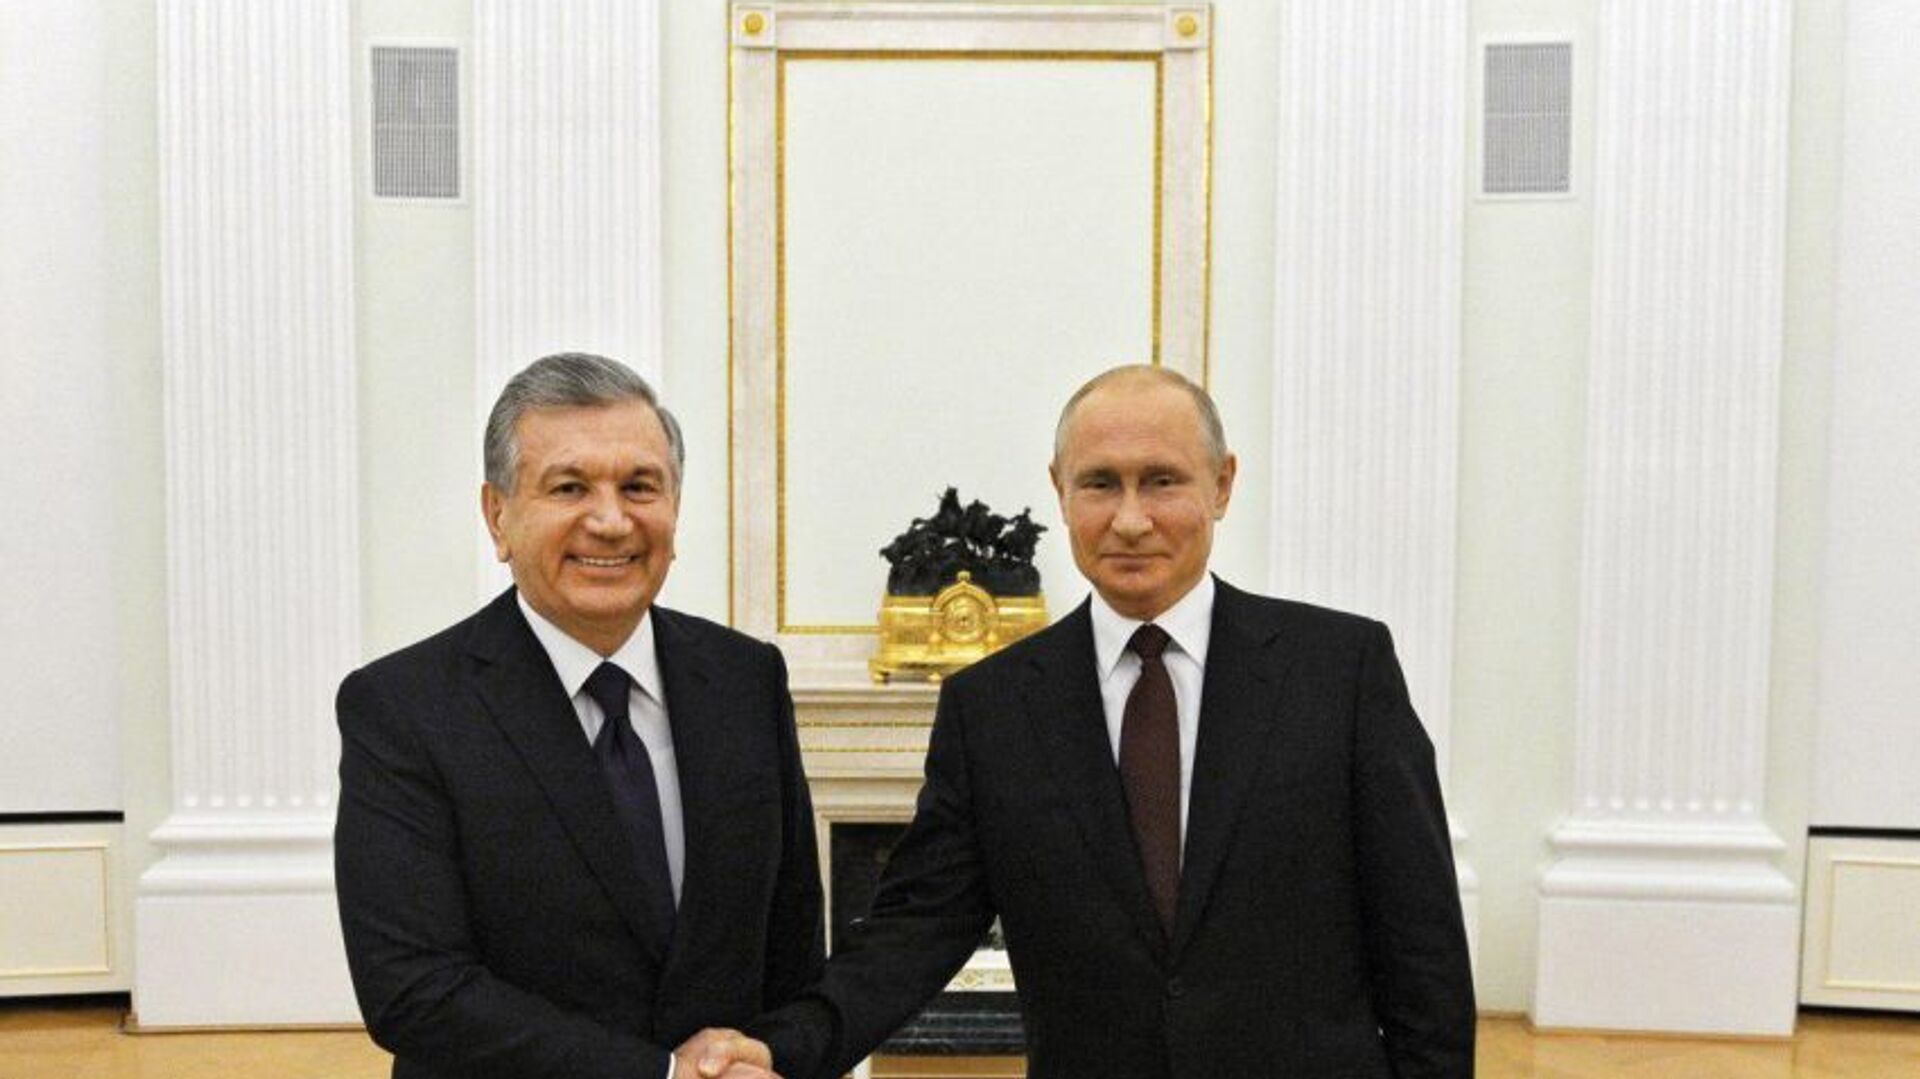 Шавкат Мирзиёев и Владимир Путин провели переговоры - Sputnik Узбекистан, 1920, 14.11.2021